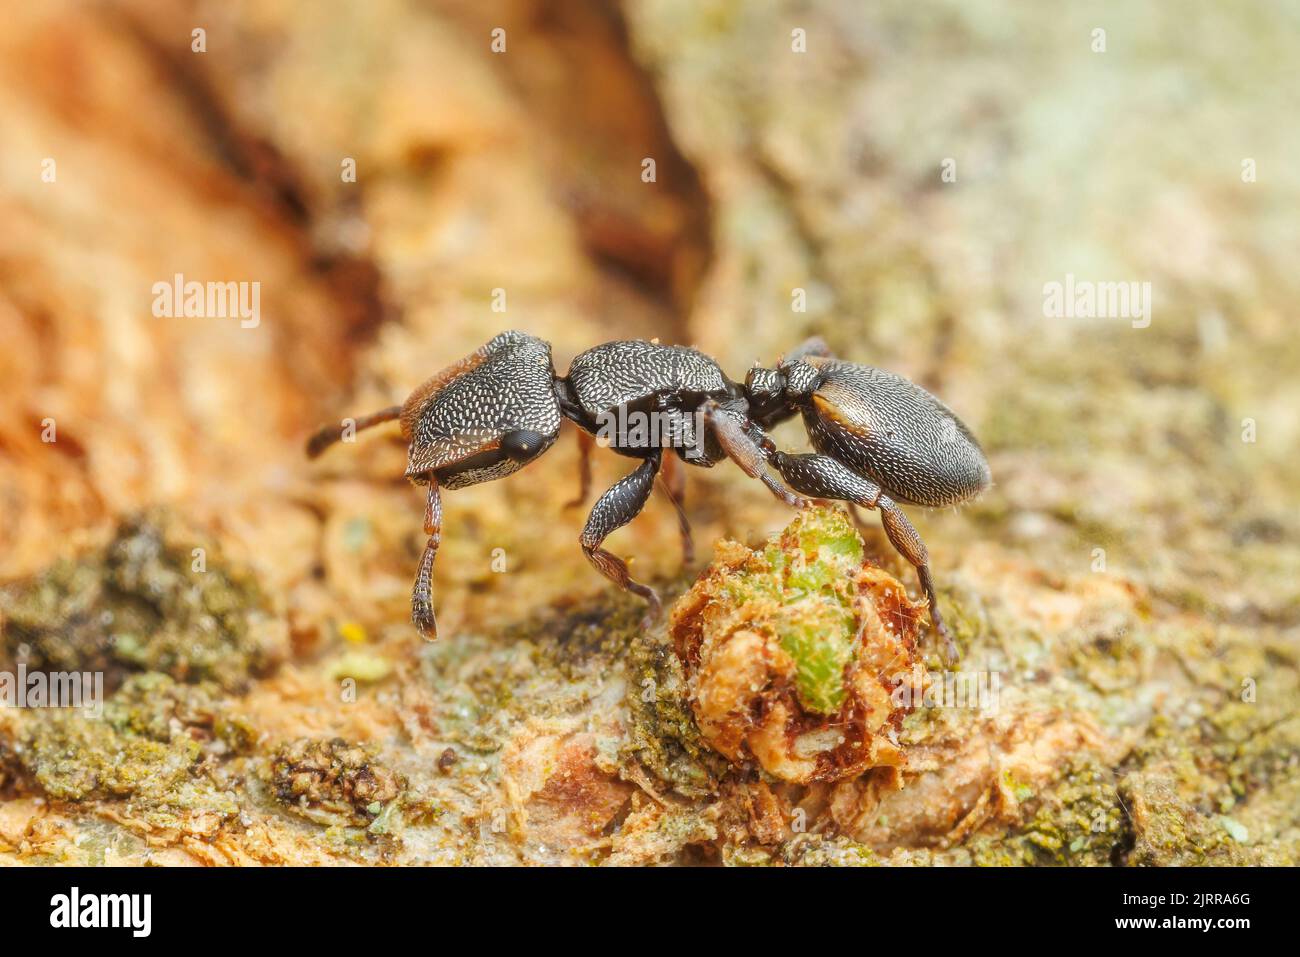 Texas Turtle Ant (Cephalotes texanus) on a Honey Mesquite (Prosopis glandulosa) tree. Stock Photo